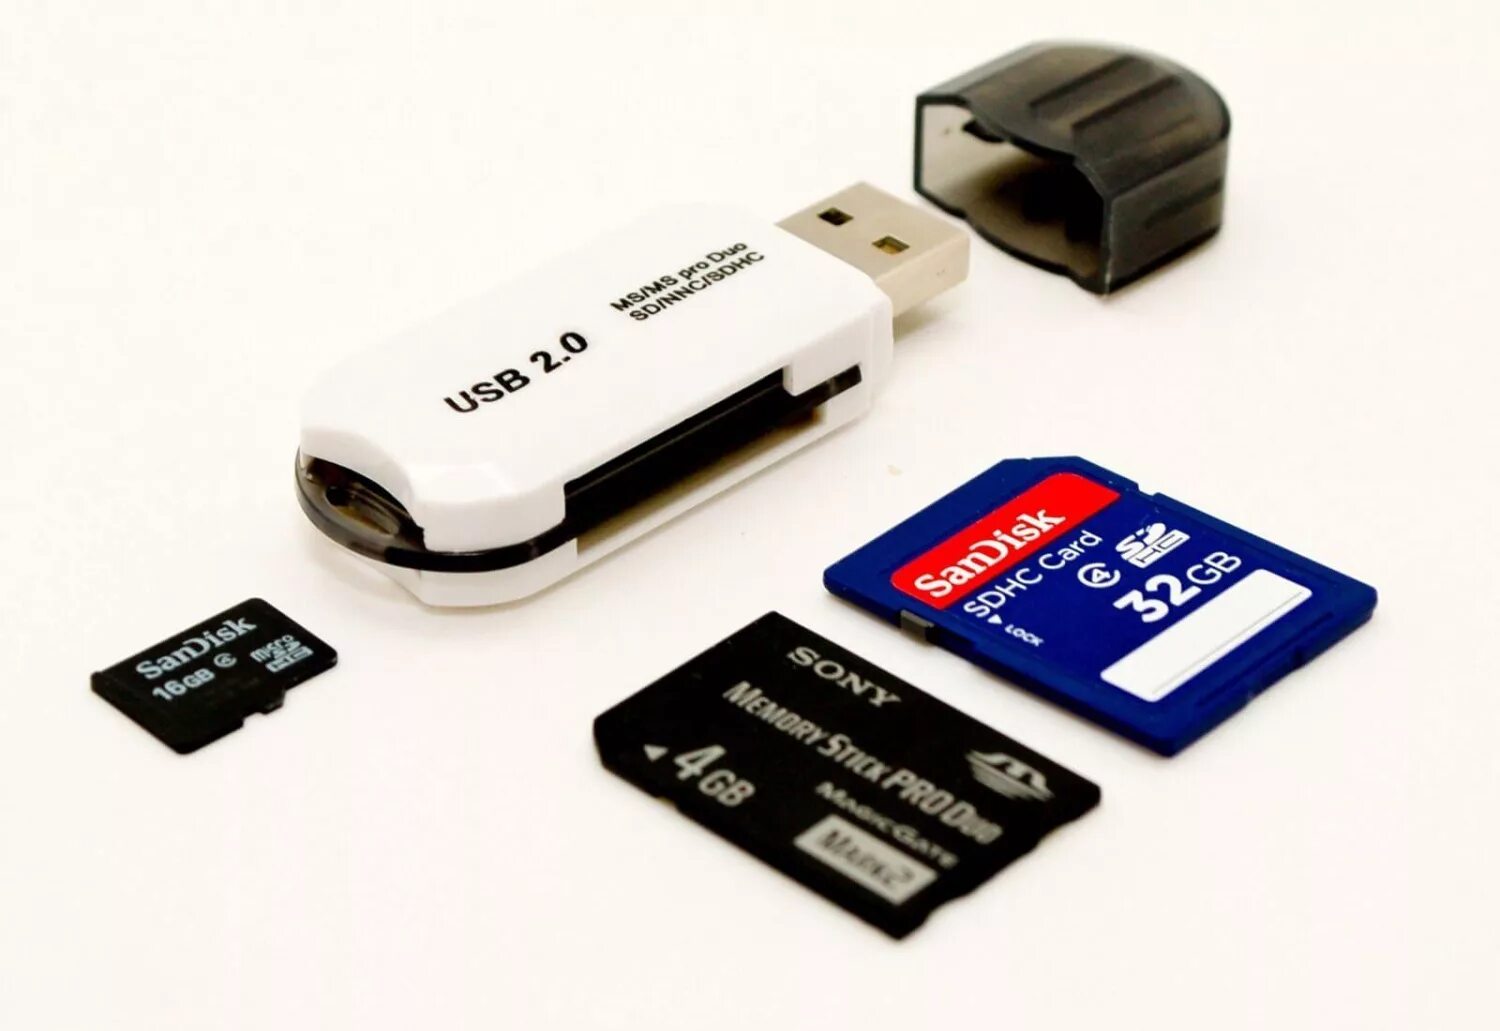 Флеш память носитель. Флешки карты памяти картридеры. Картридер для микро SD карты и флешку. Юсб флешка для карты памяти. Юзбифлэшки карты памяти.